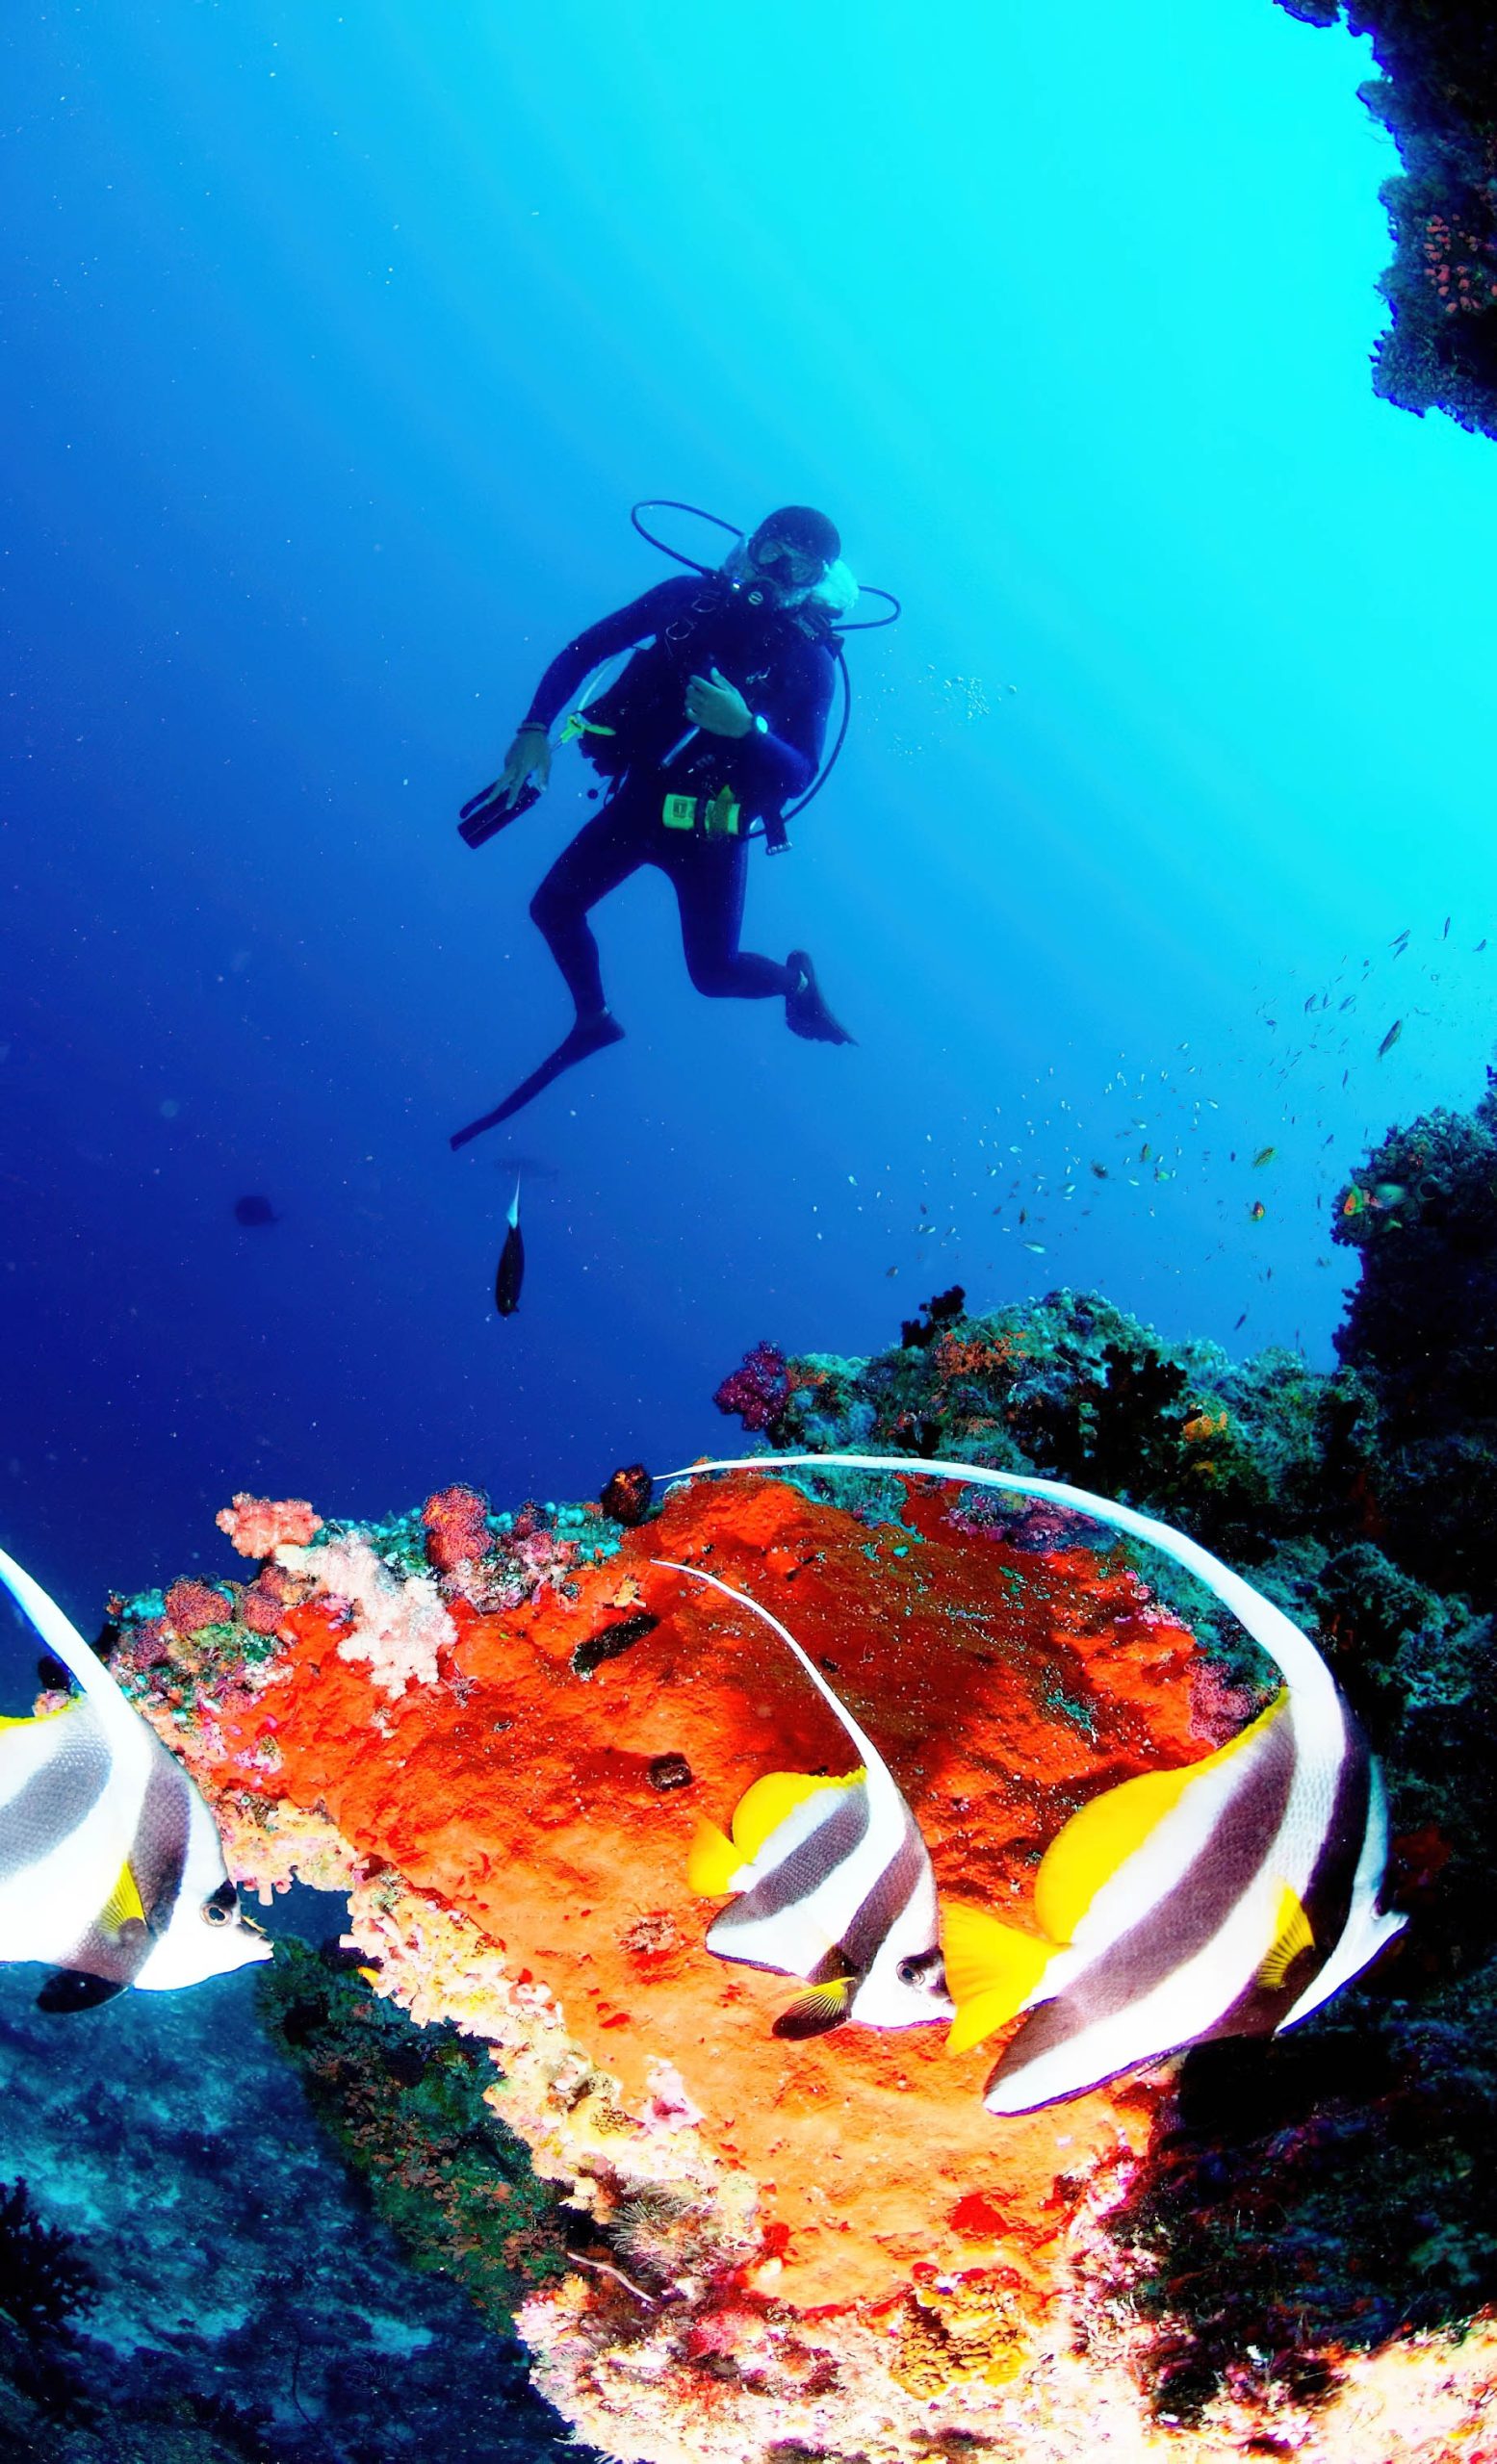 Anantara Thigu Maldives Resort – South Male Atoll, Maldives – Scuba Diving